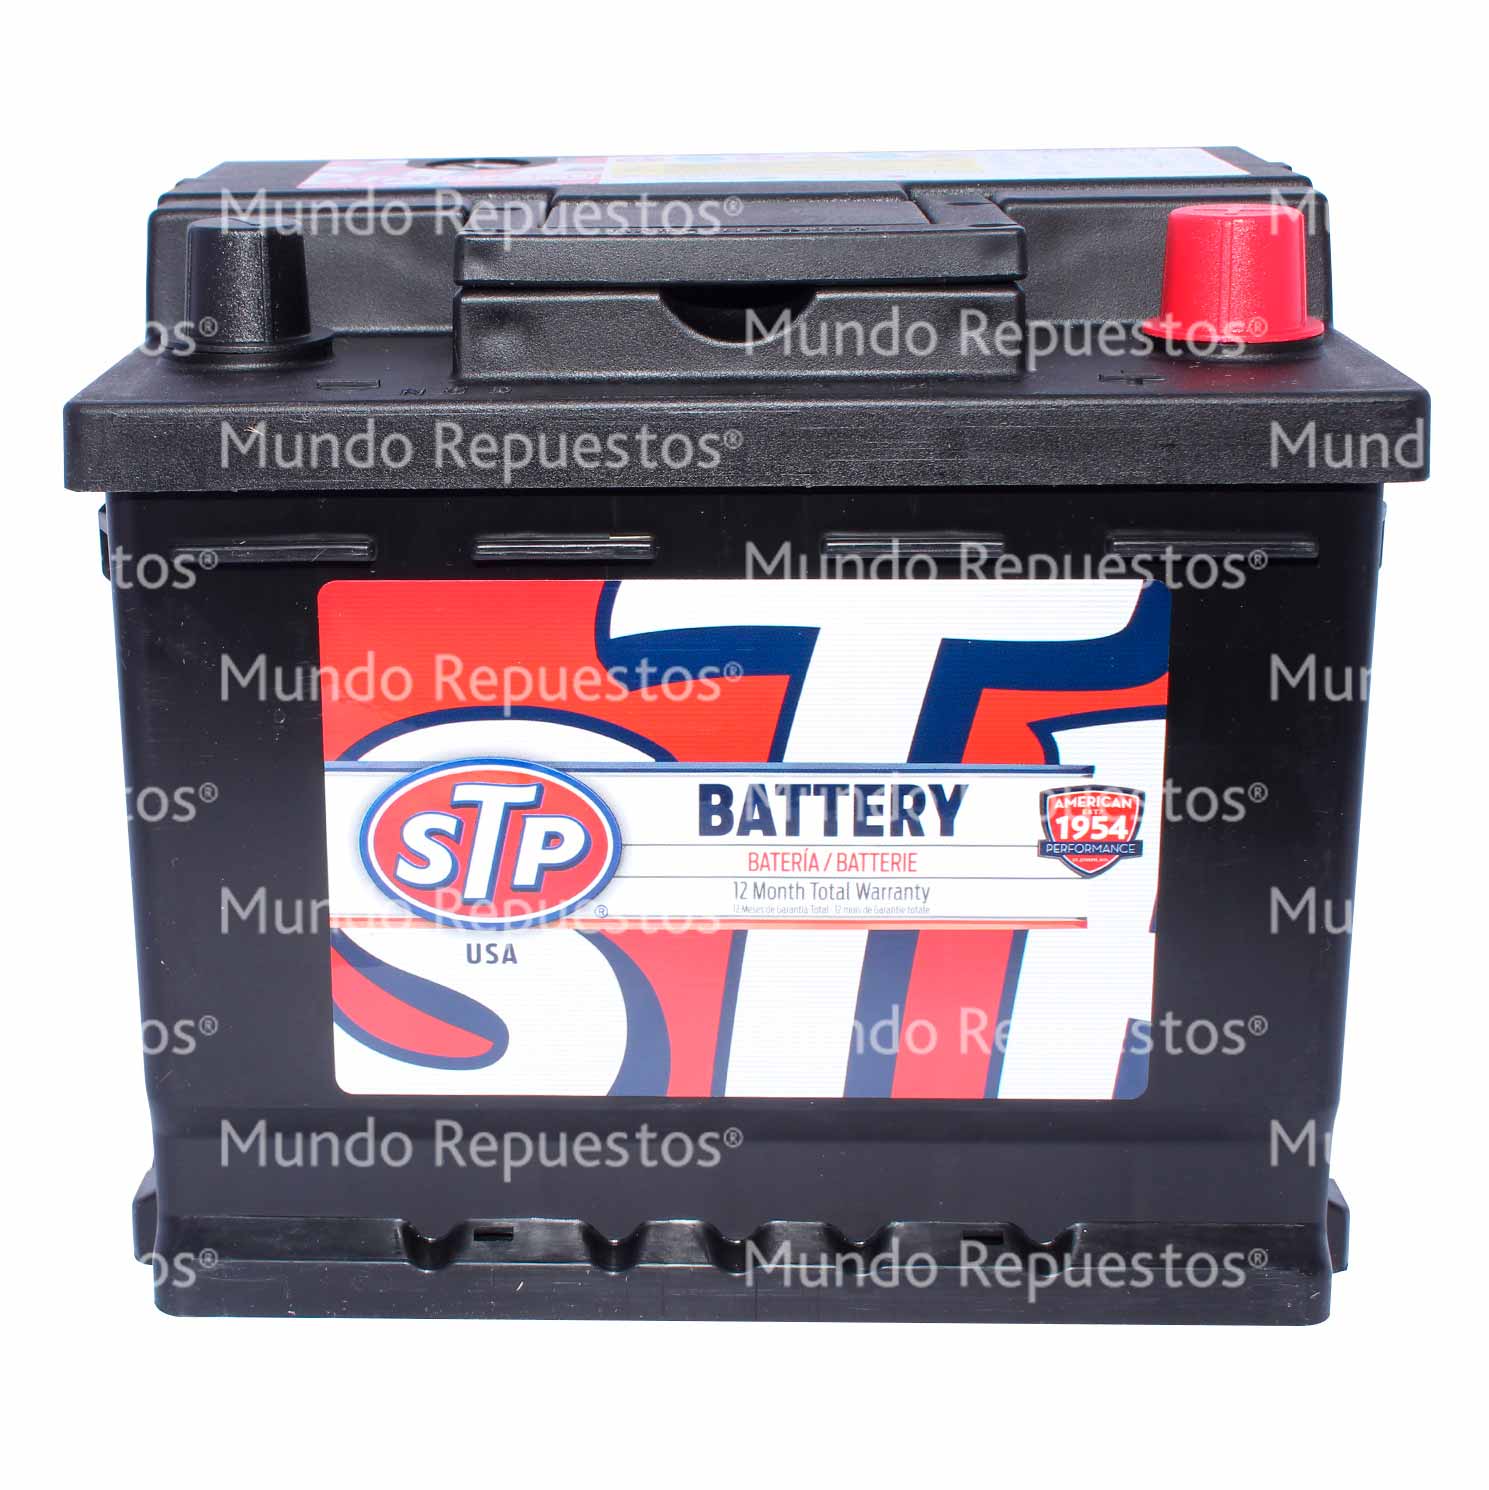 Bateria marca Stp disponible en Mundo Repuestos